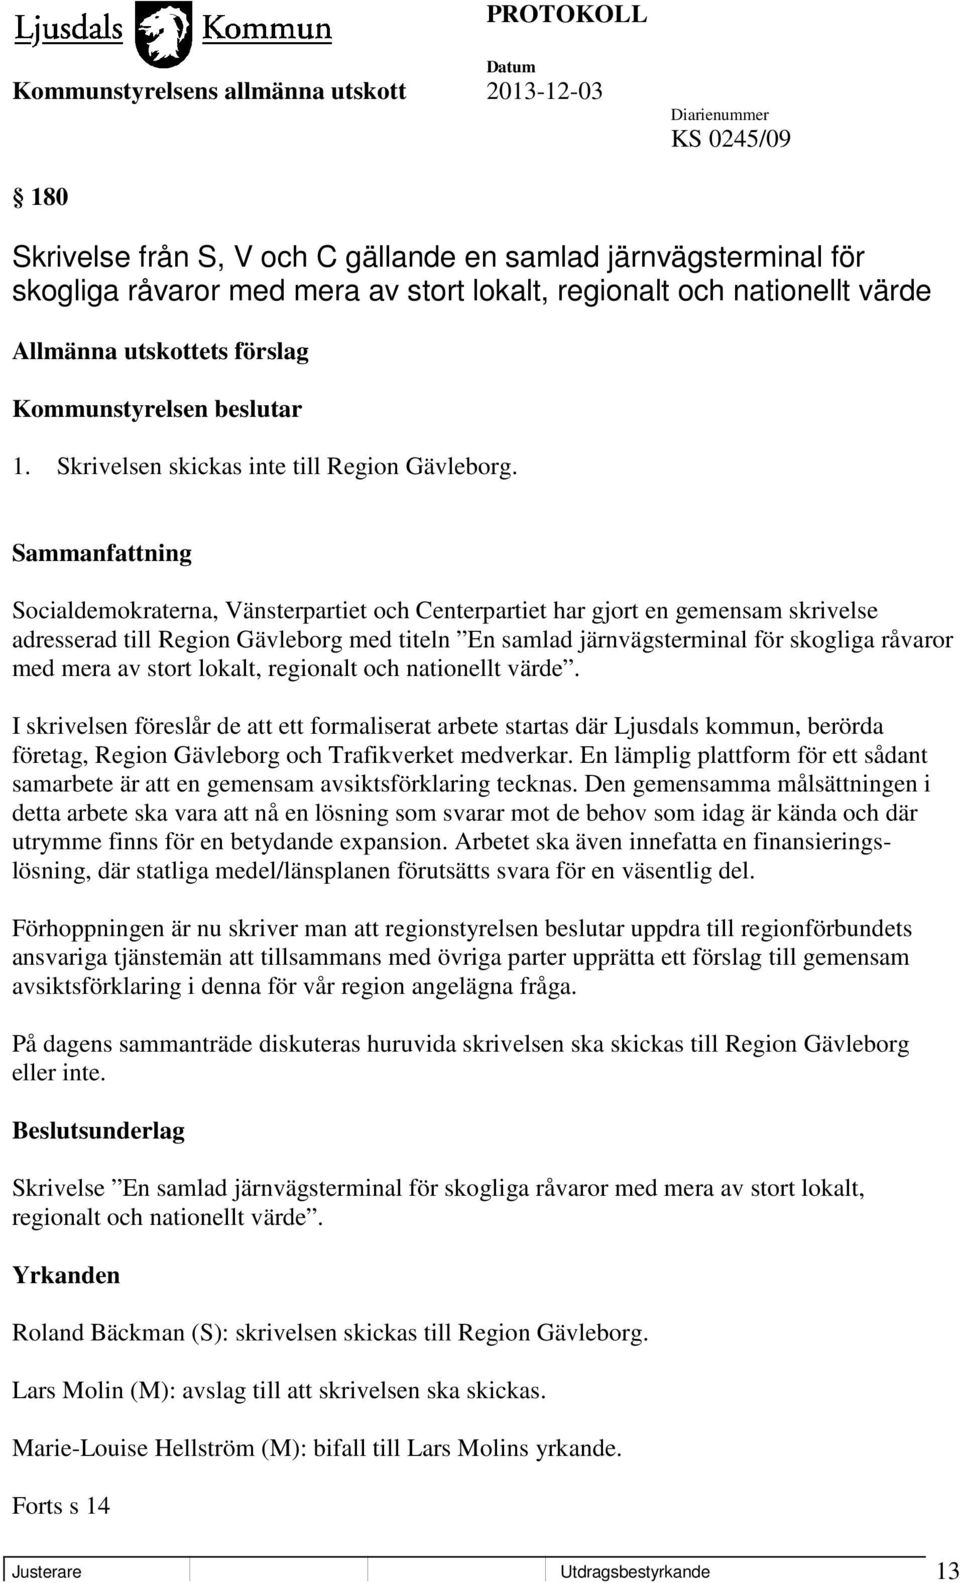 Socialdemokraterna, Vänsterpartiet och Centerpartiet har gjort en gemensam skrivelse adresserad till Region Gävleborg med titeln En samlad järnvägsterminal för skogliga råvaror med mera av stort